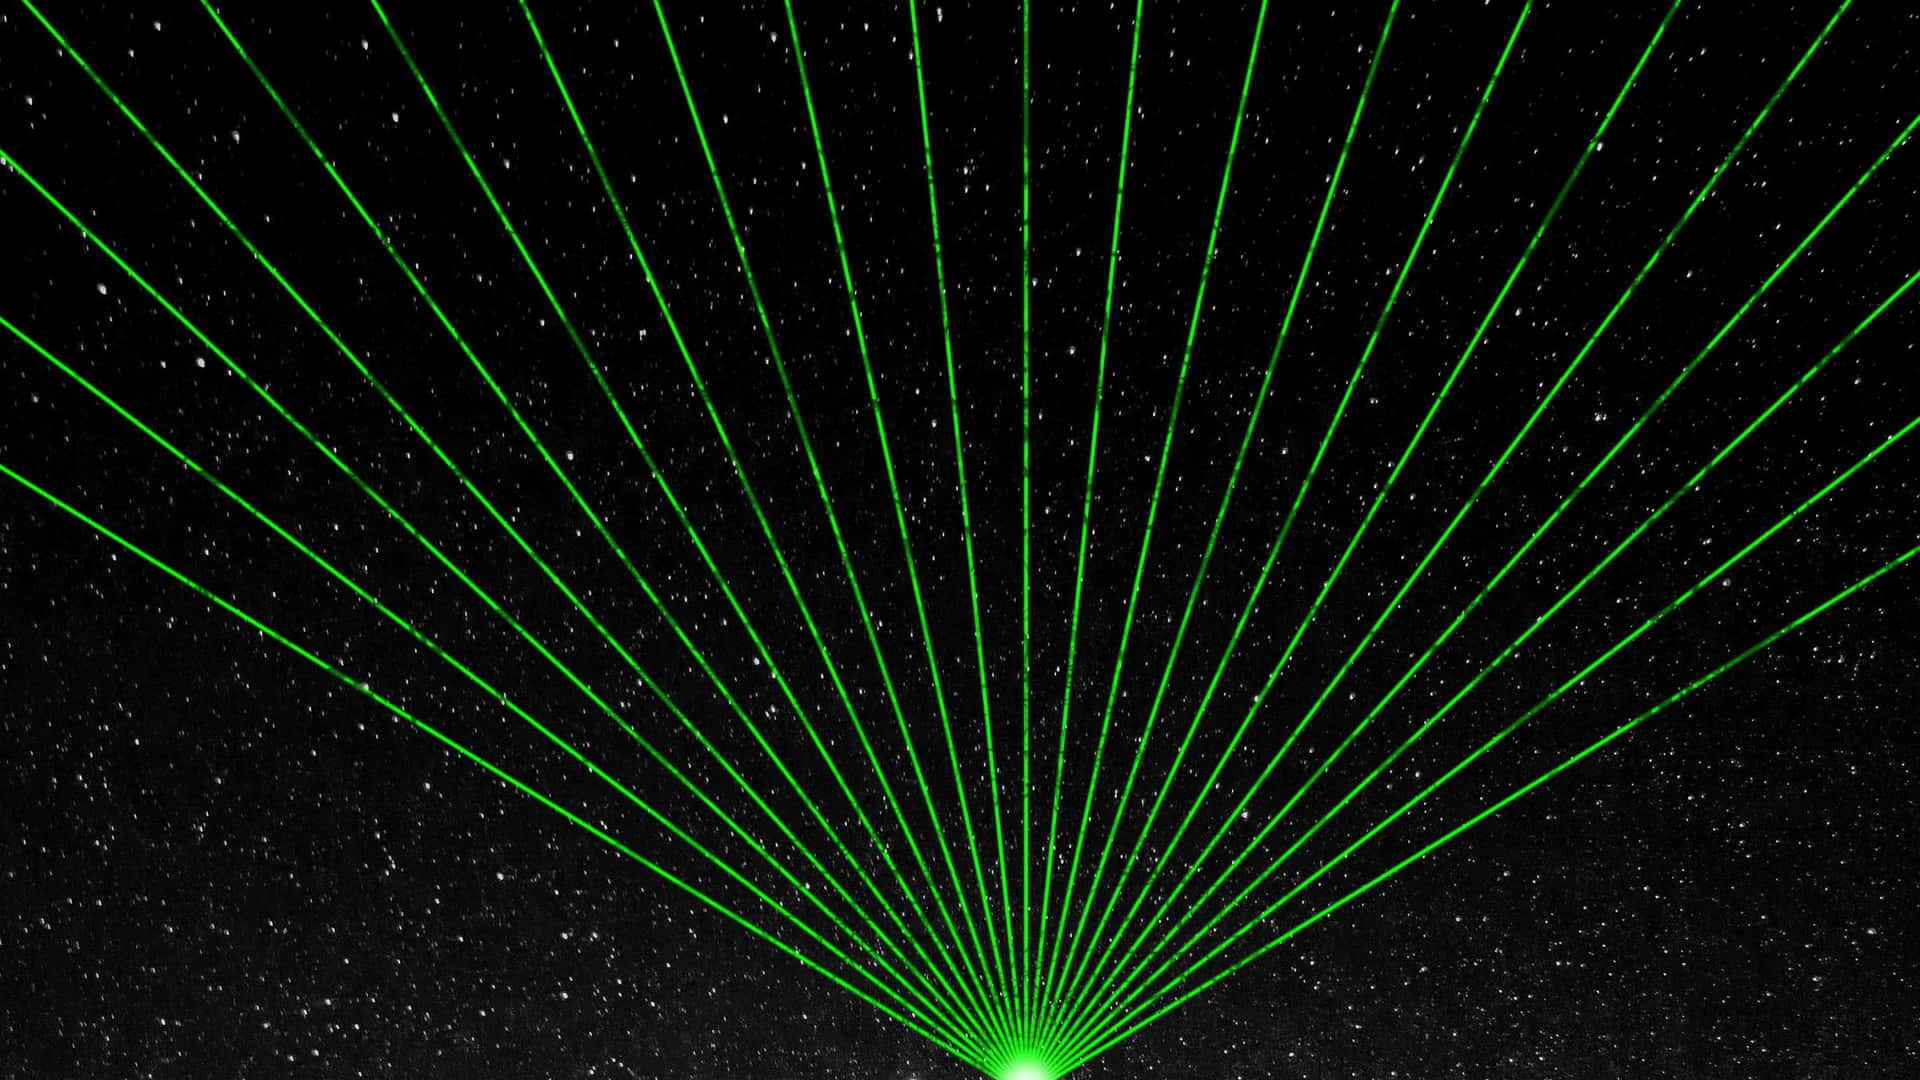 Green Laser Light Show Night Sky Wallpaper